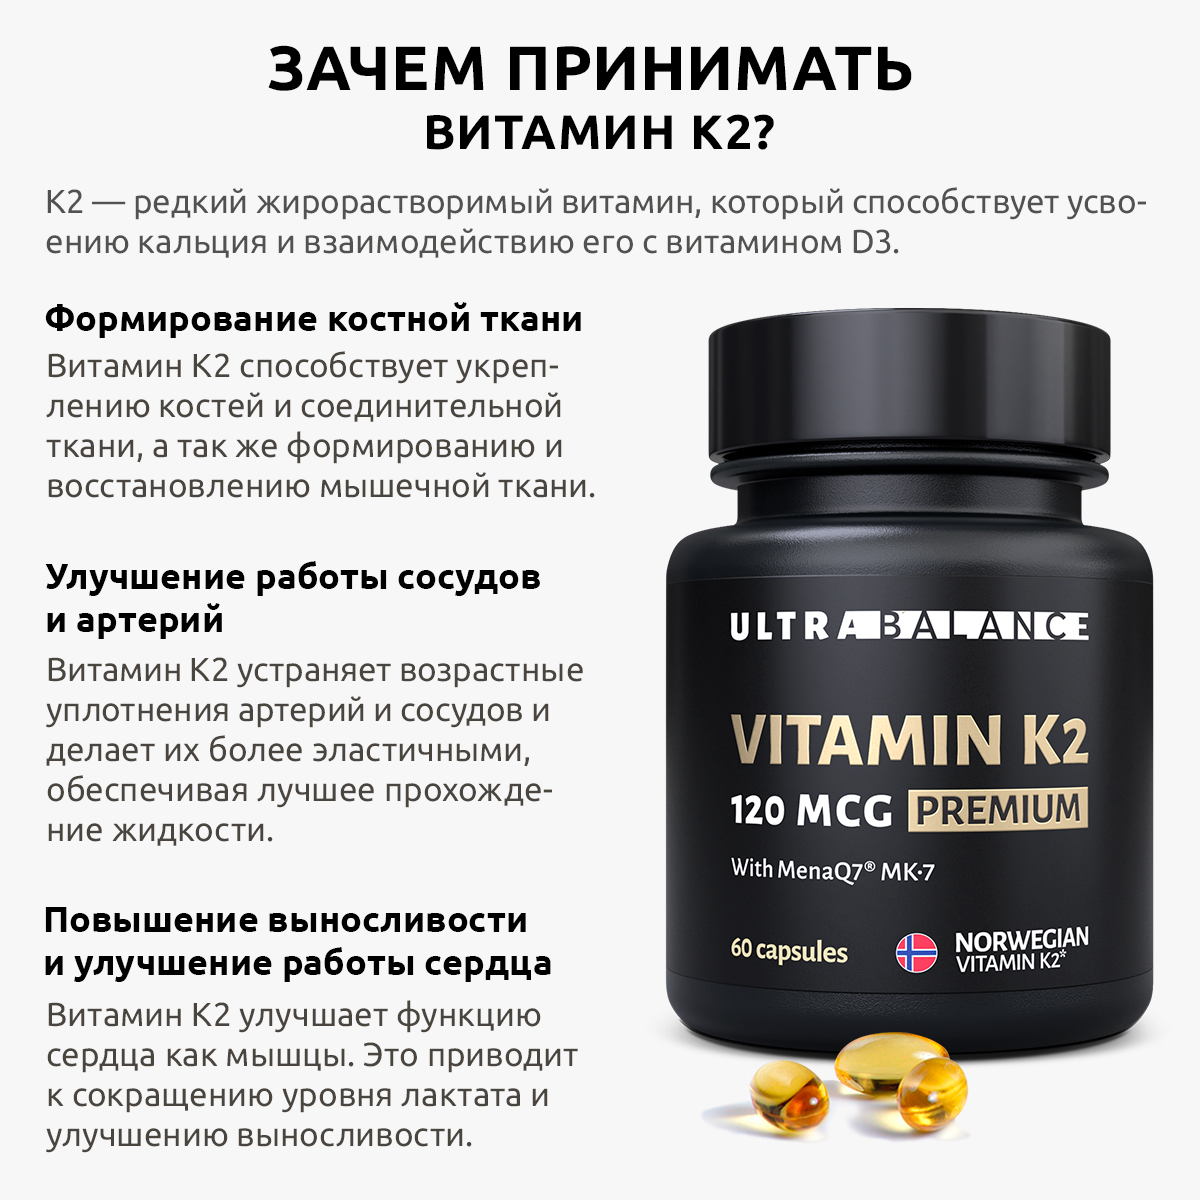 Витамин моно К2 МК-7 комплекс UltraBalance бад менахинон7 120 mcg Premium 60 капсул - фото 3